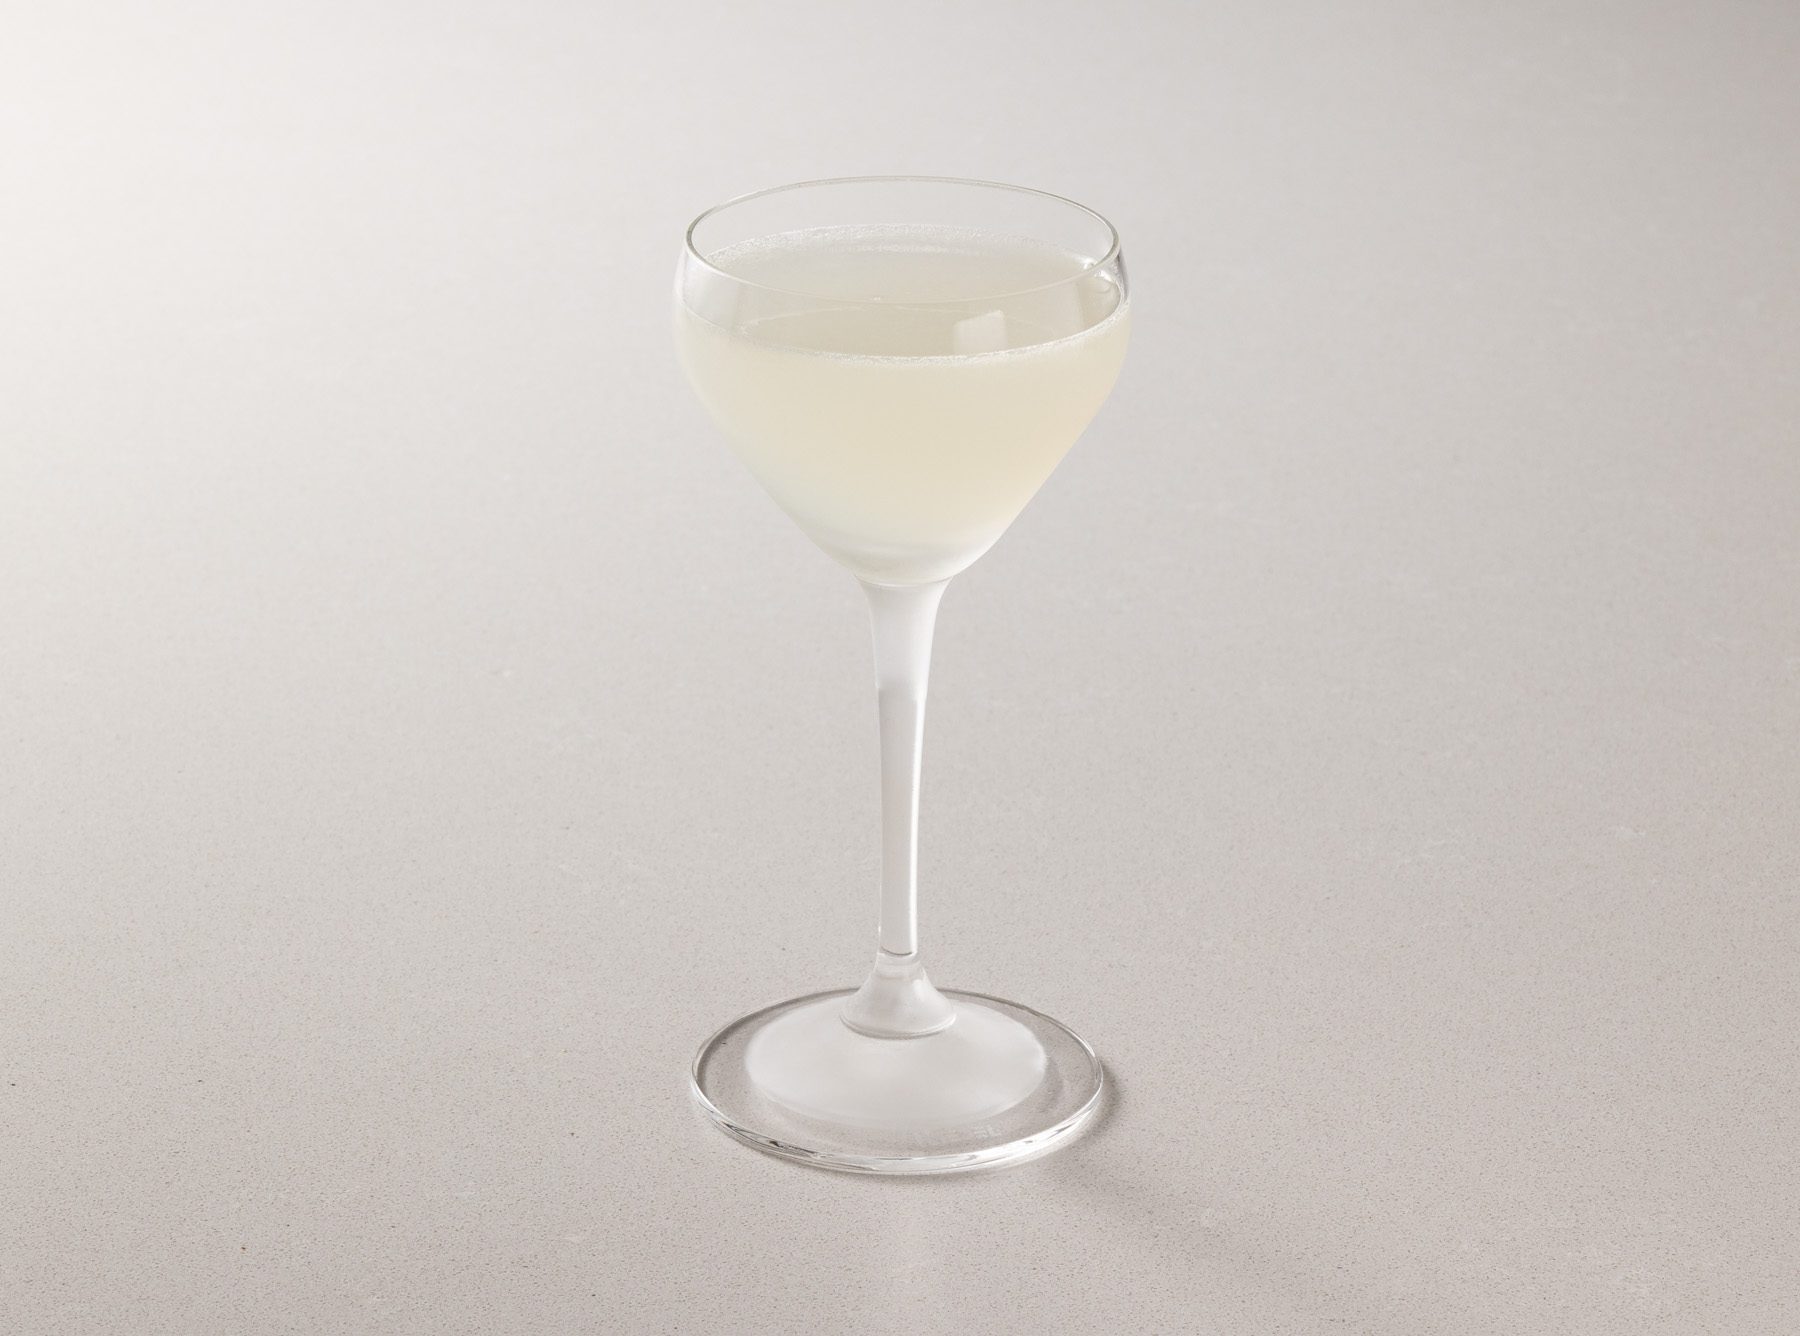 Daiquiri cocktail